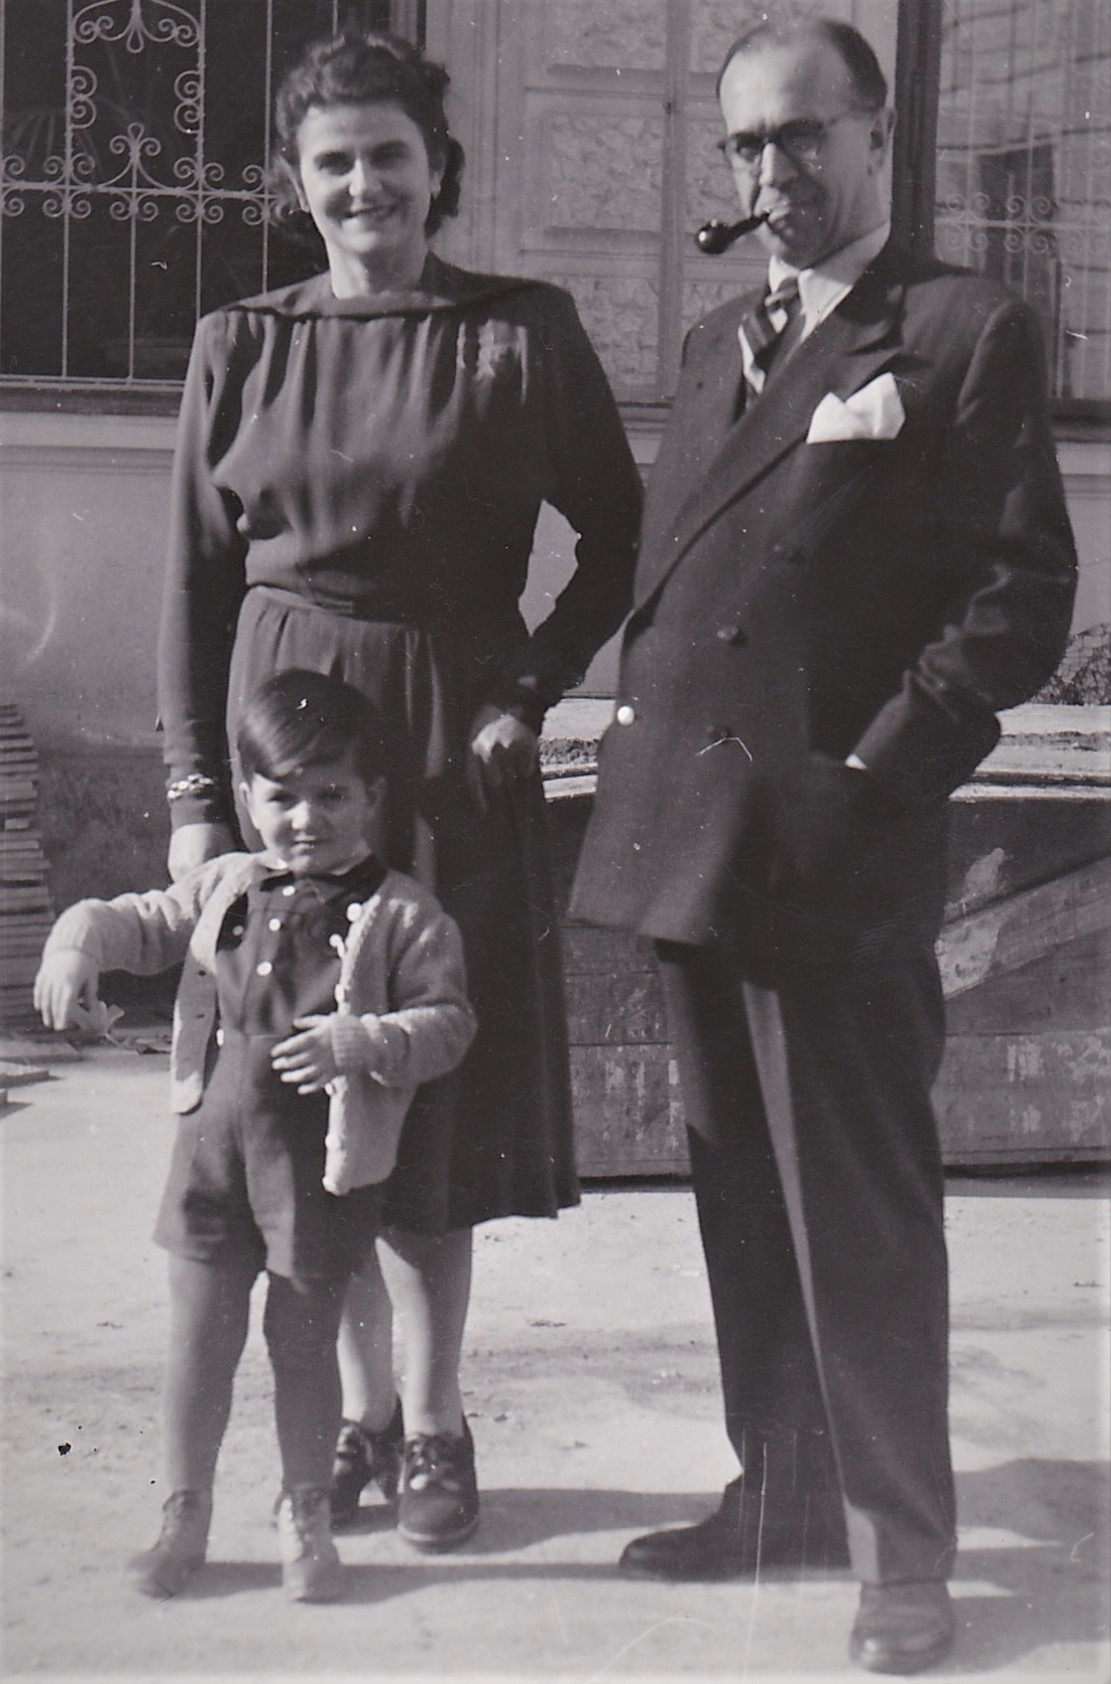 Ludmila & Vojtěch Stáňovi with their son Antonín (Wien 1947?)